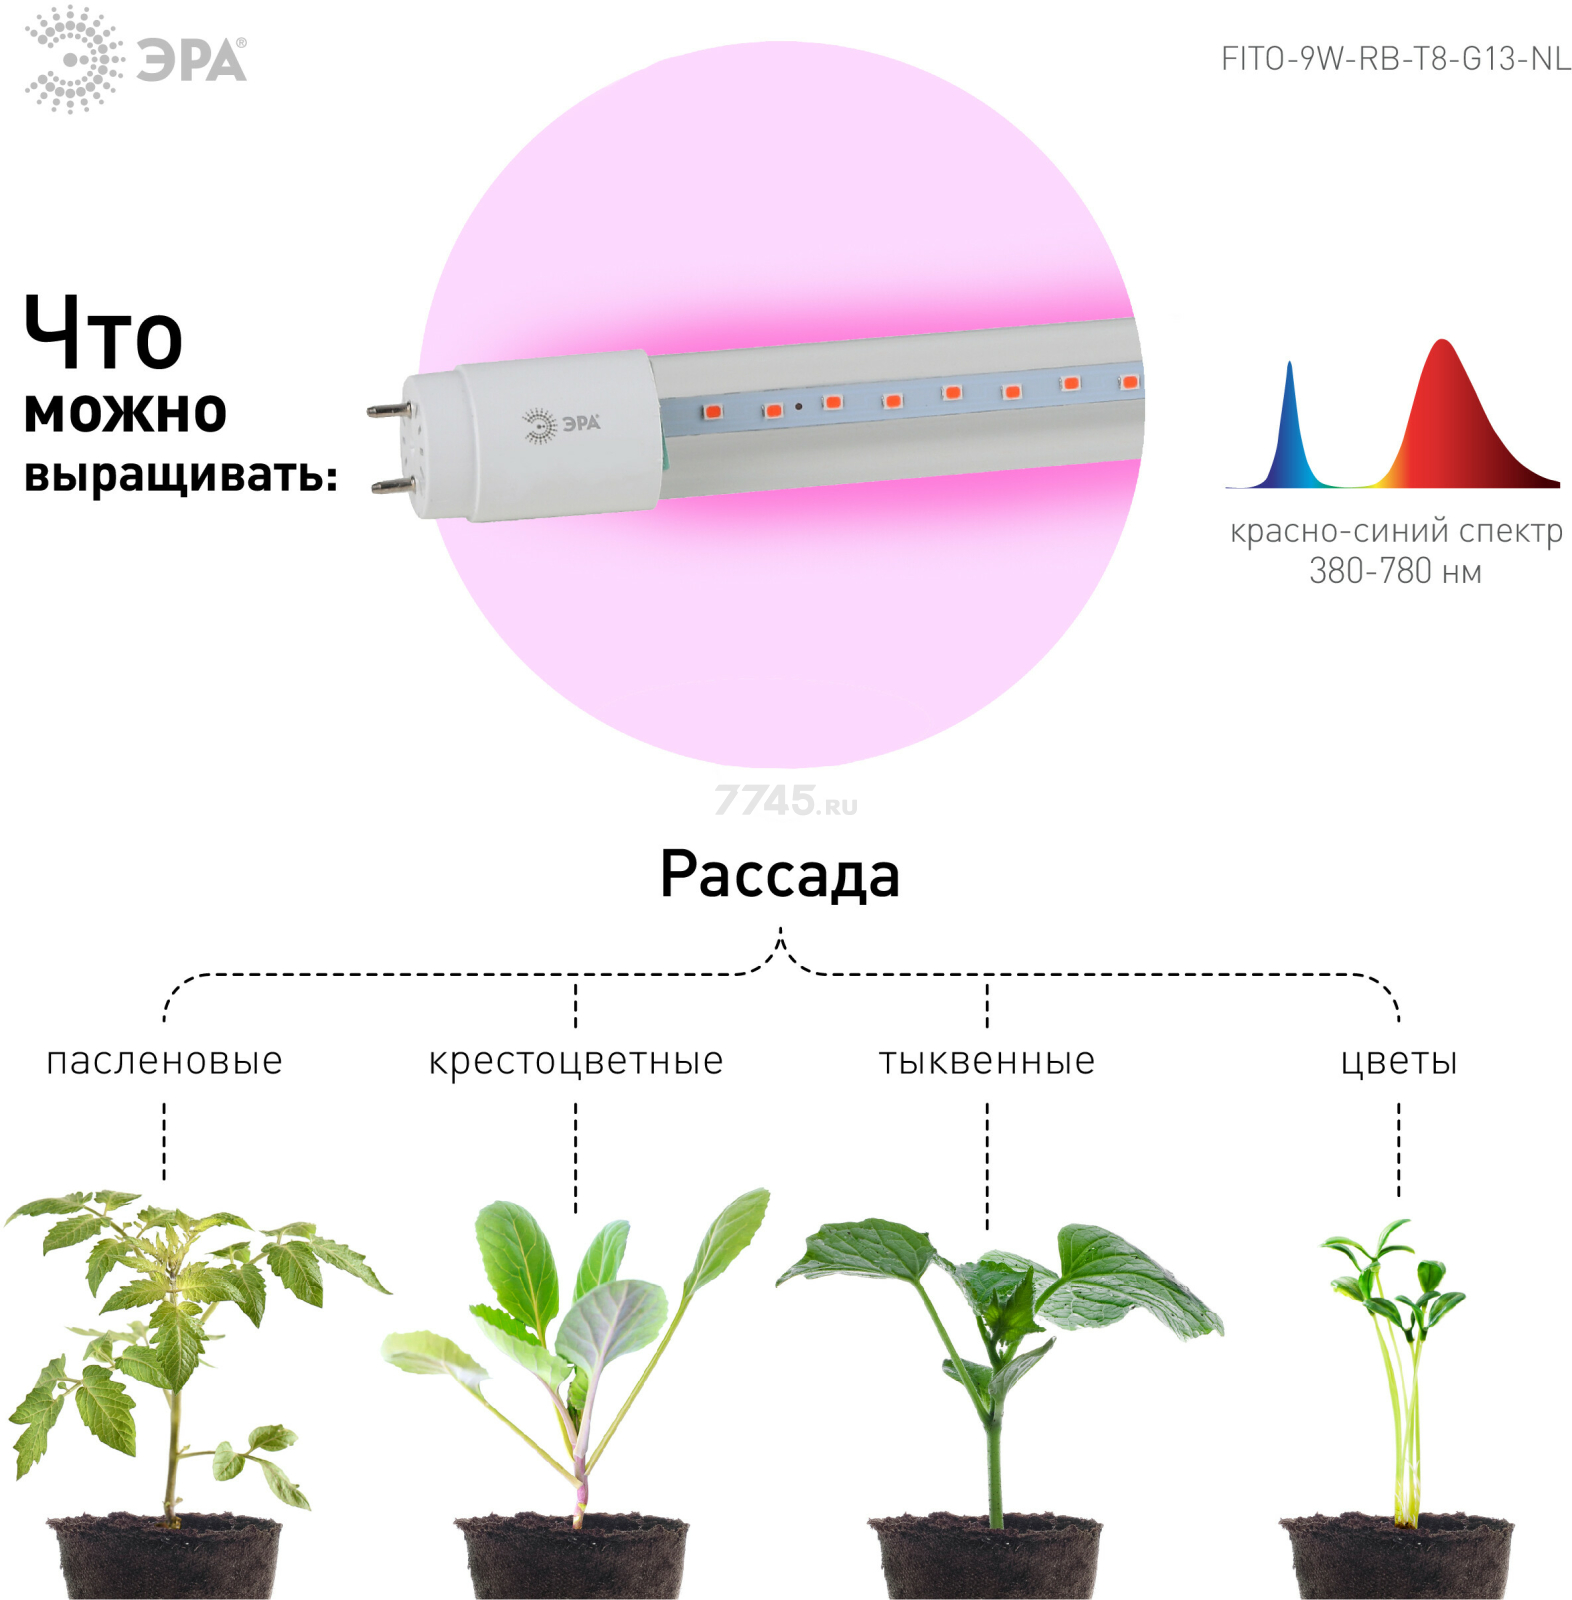 Фитолампа для растений красно-синего спектра ЭРА FITO-9W-RB-Т8-G13-NL Т8 G13 9 Вт - Фото 4